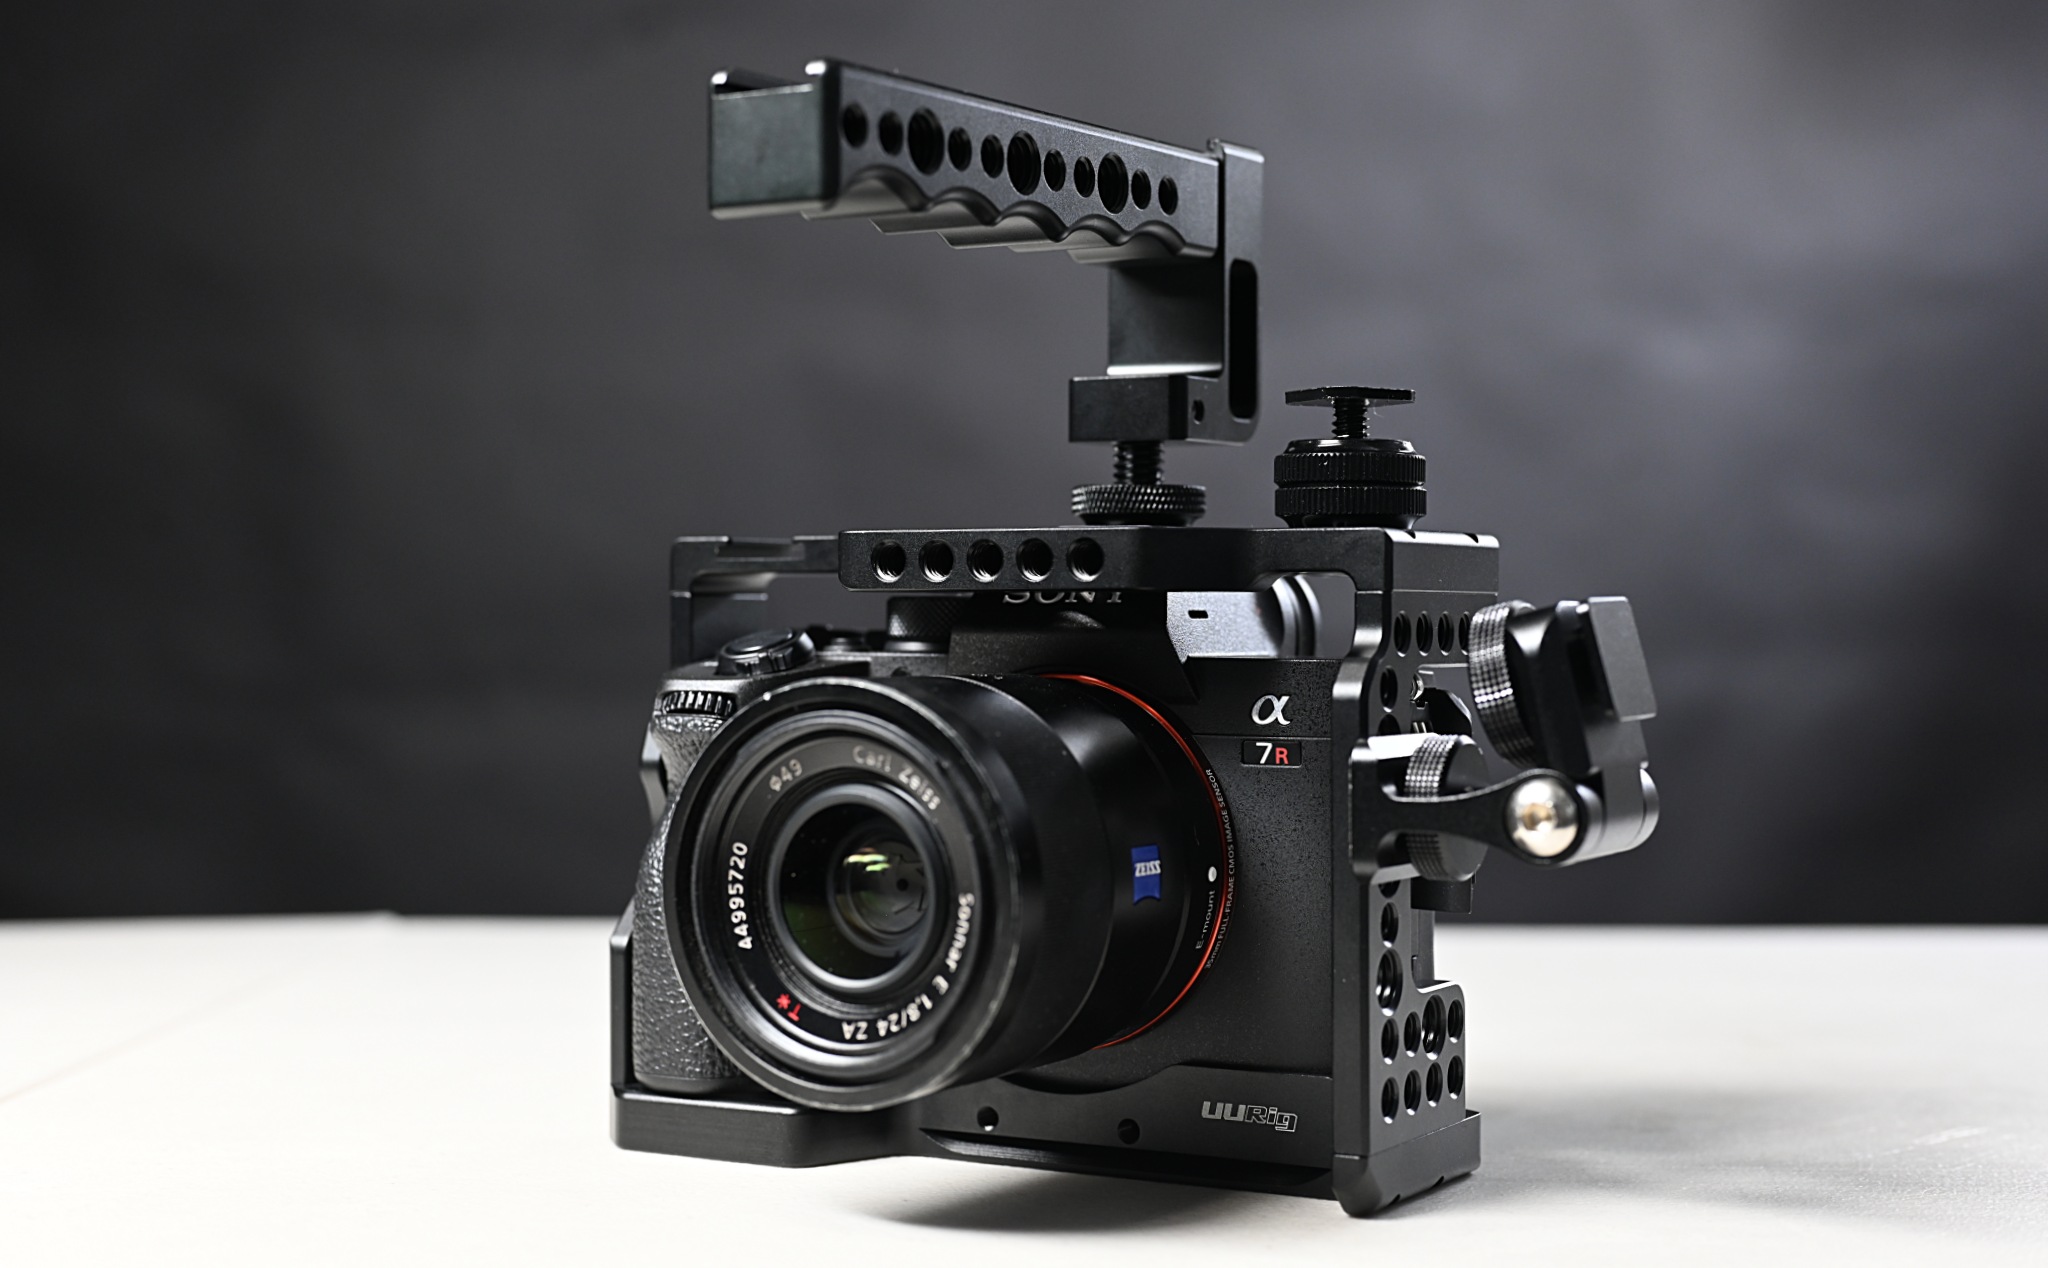 Trên tay UUrig C-A73 Phụ kiện hỗ trợ quay video bằng máy ảnh, tiện dụng thao tác và gắn mở rộng thêm